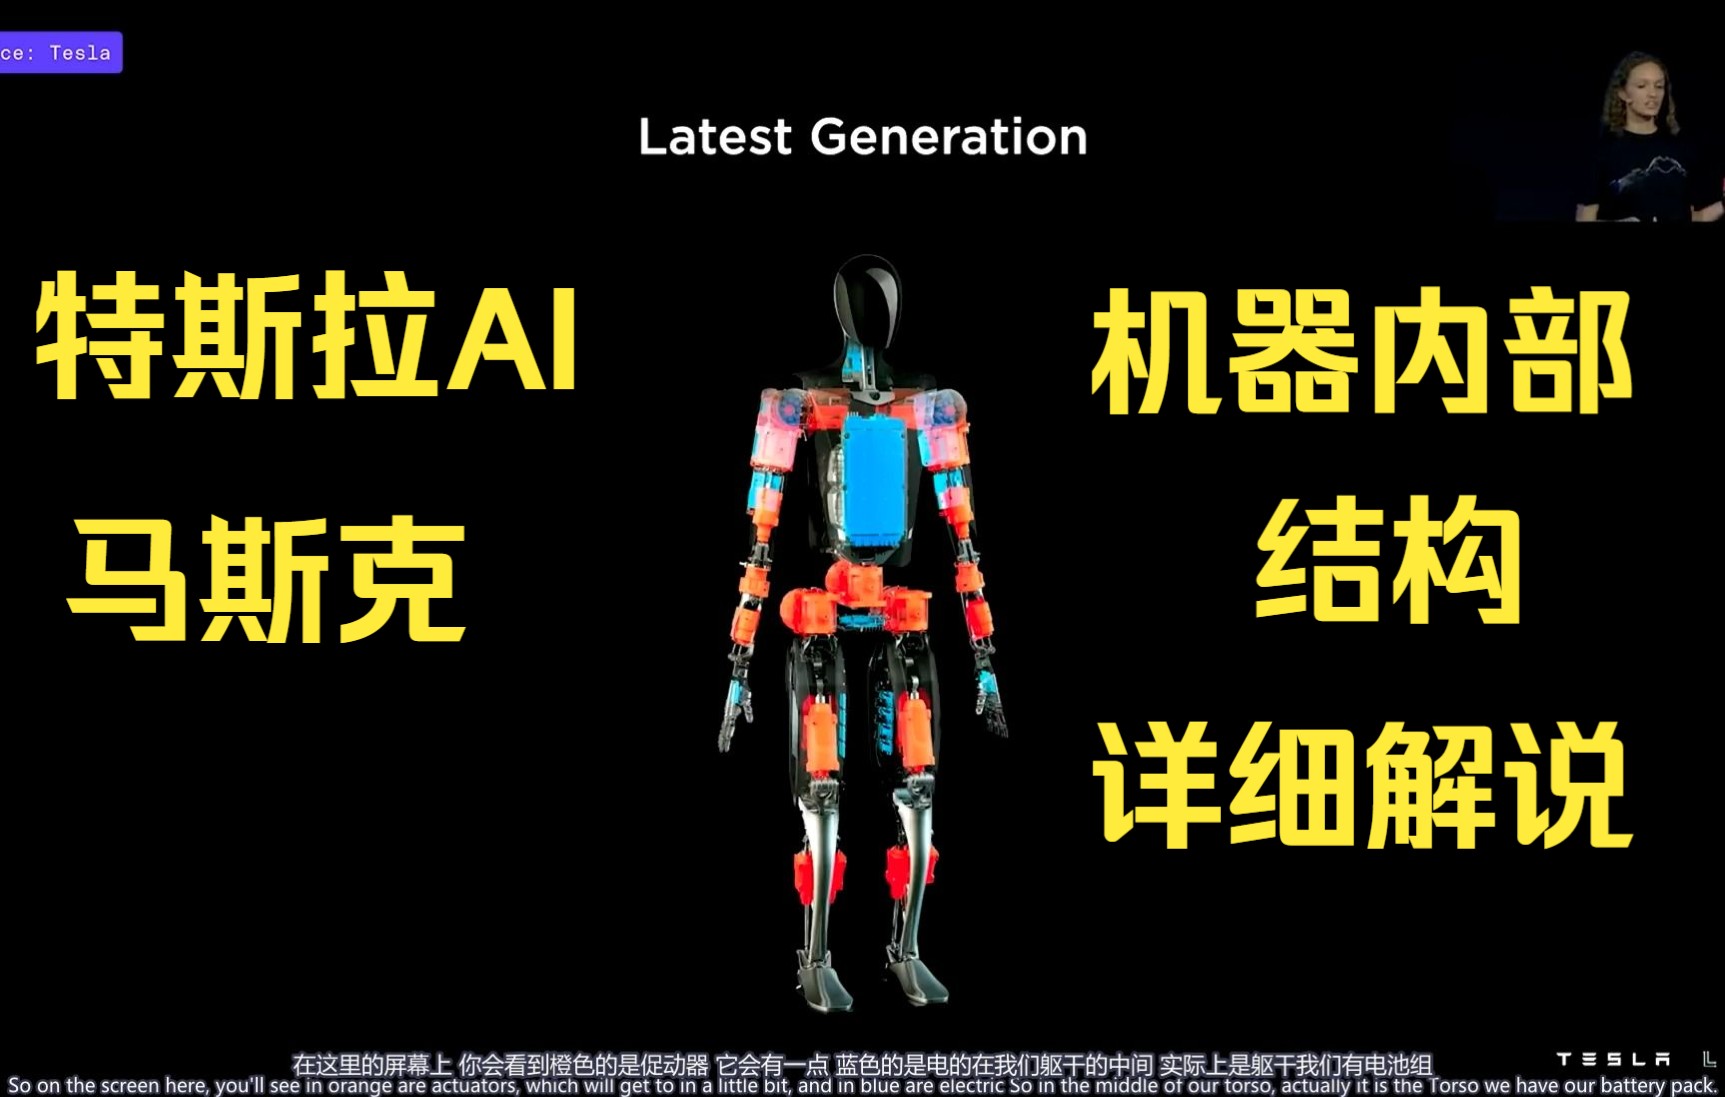 马斯克号称会改变世界的人形机器人“擎天柱”终于现身！售价不到2万美元，将量产数百万台_AI&大模型_刘燕_InfoQ精选文章